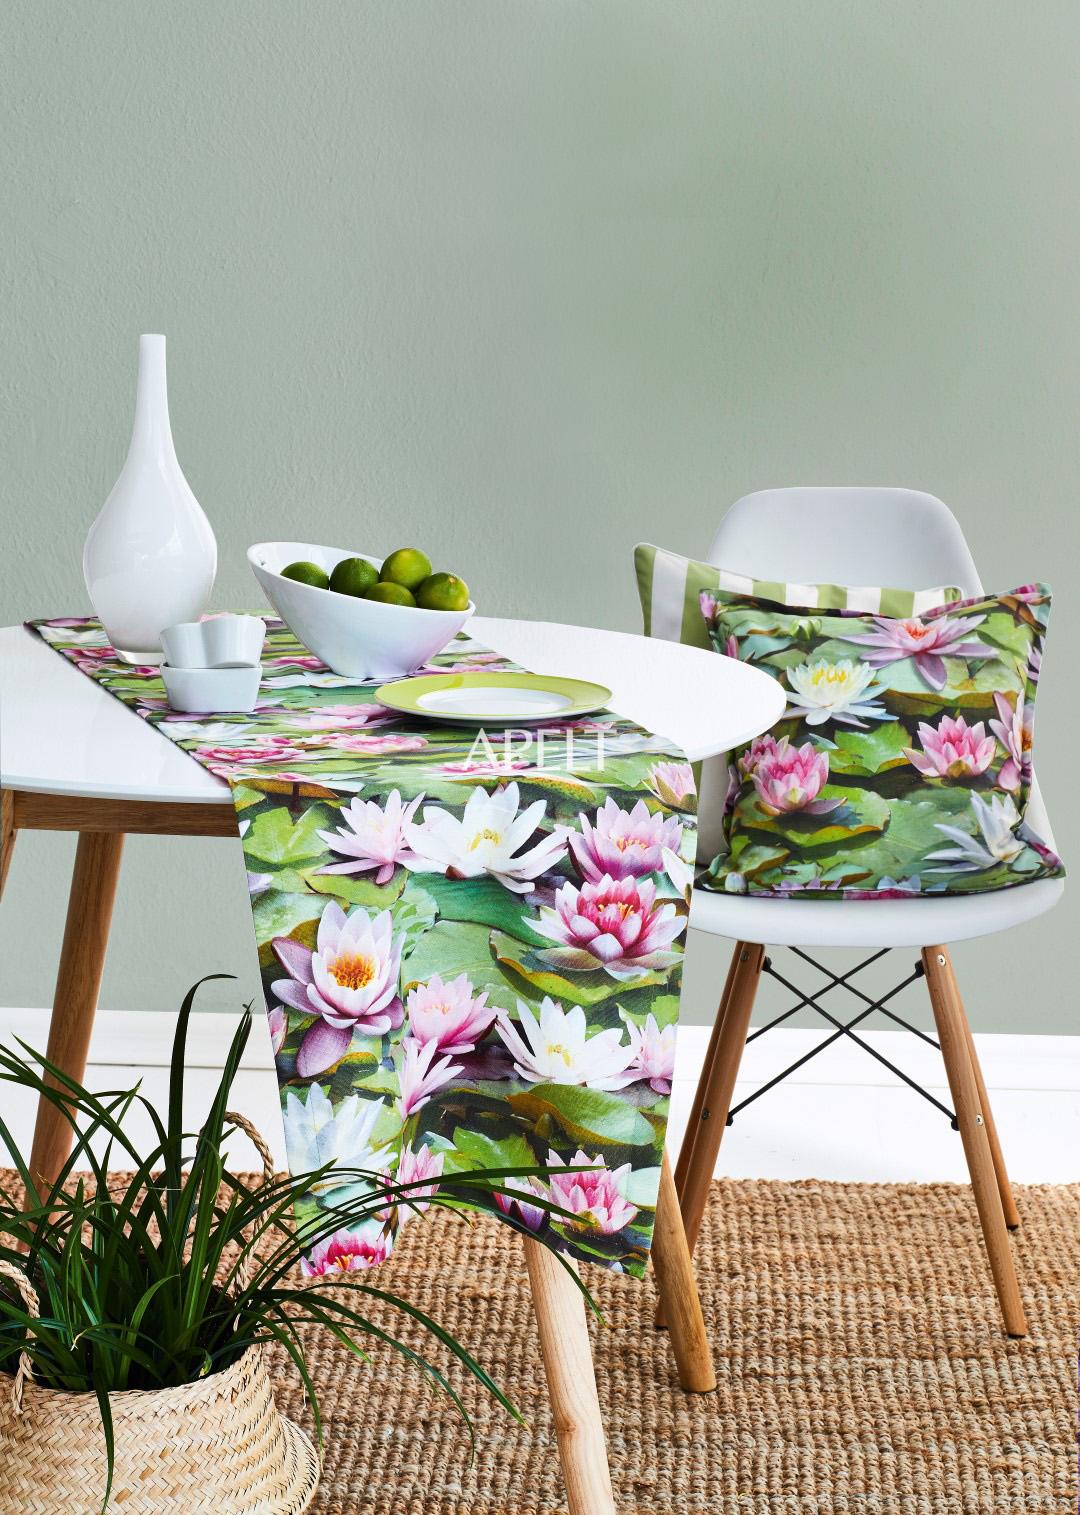 Seerosen für ein sommerliches Styling, Art. 9587 #Apelt #Textilien #Tischwäsche #Kissen #Wohnzimmer #Esszimmer #Sommer